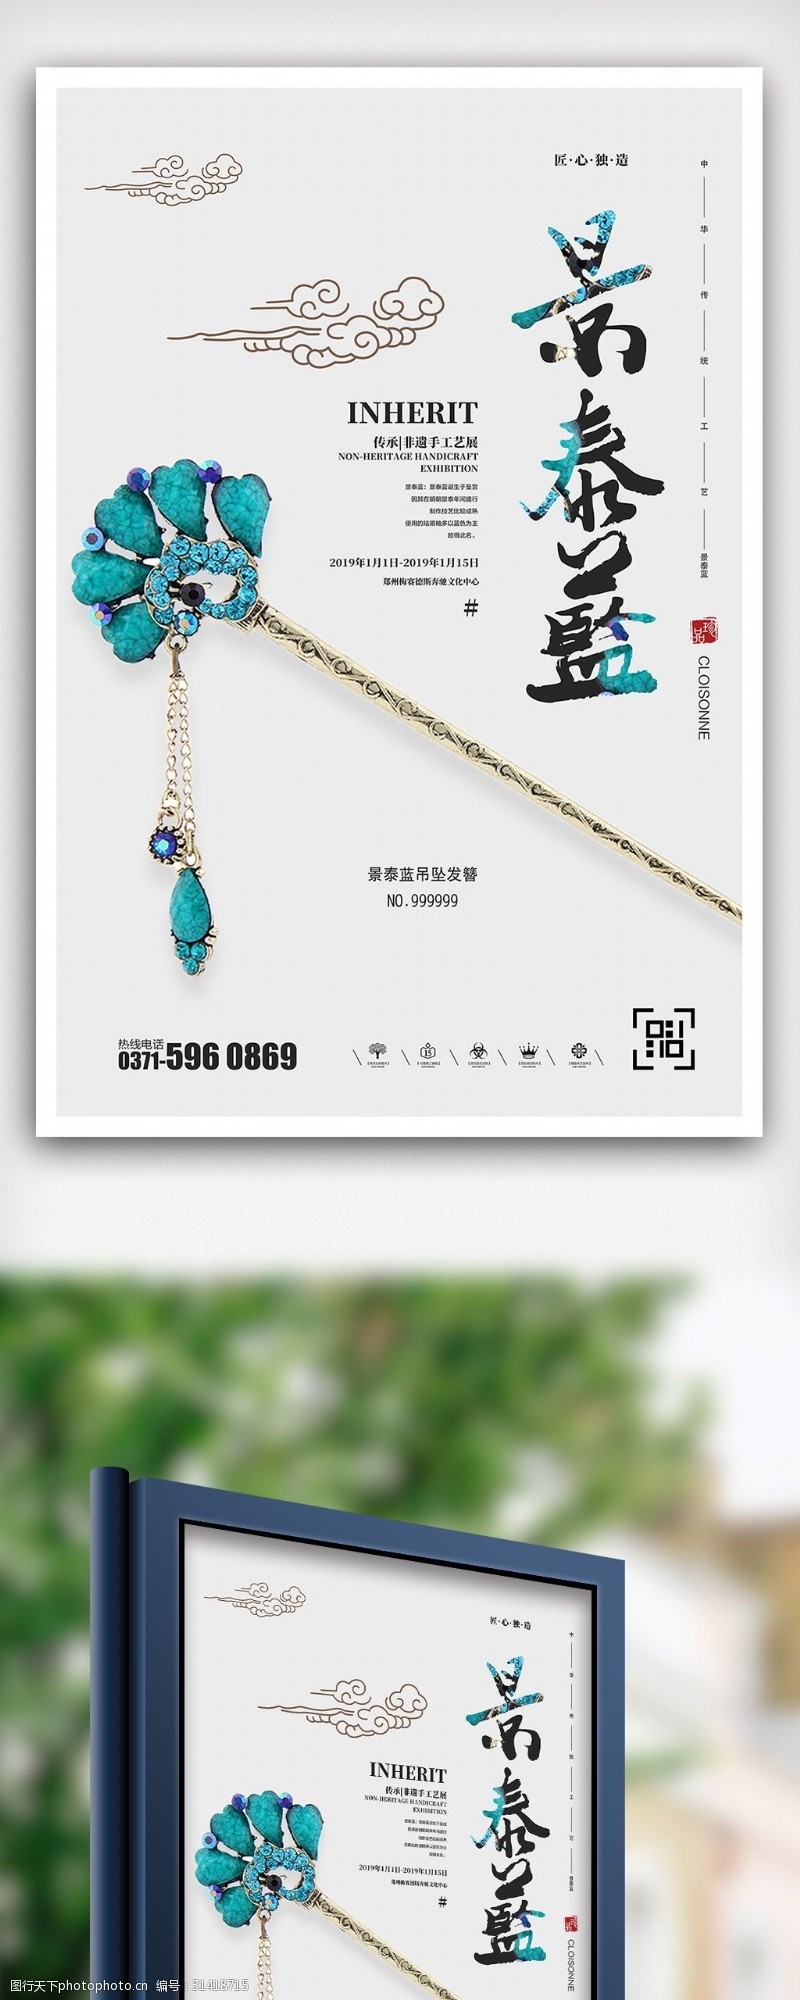 泰陶创意非物质文化遗产景泰蓝公益海报